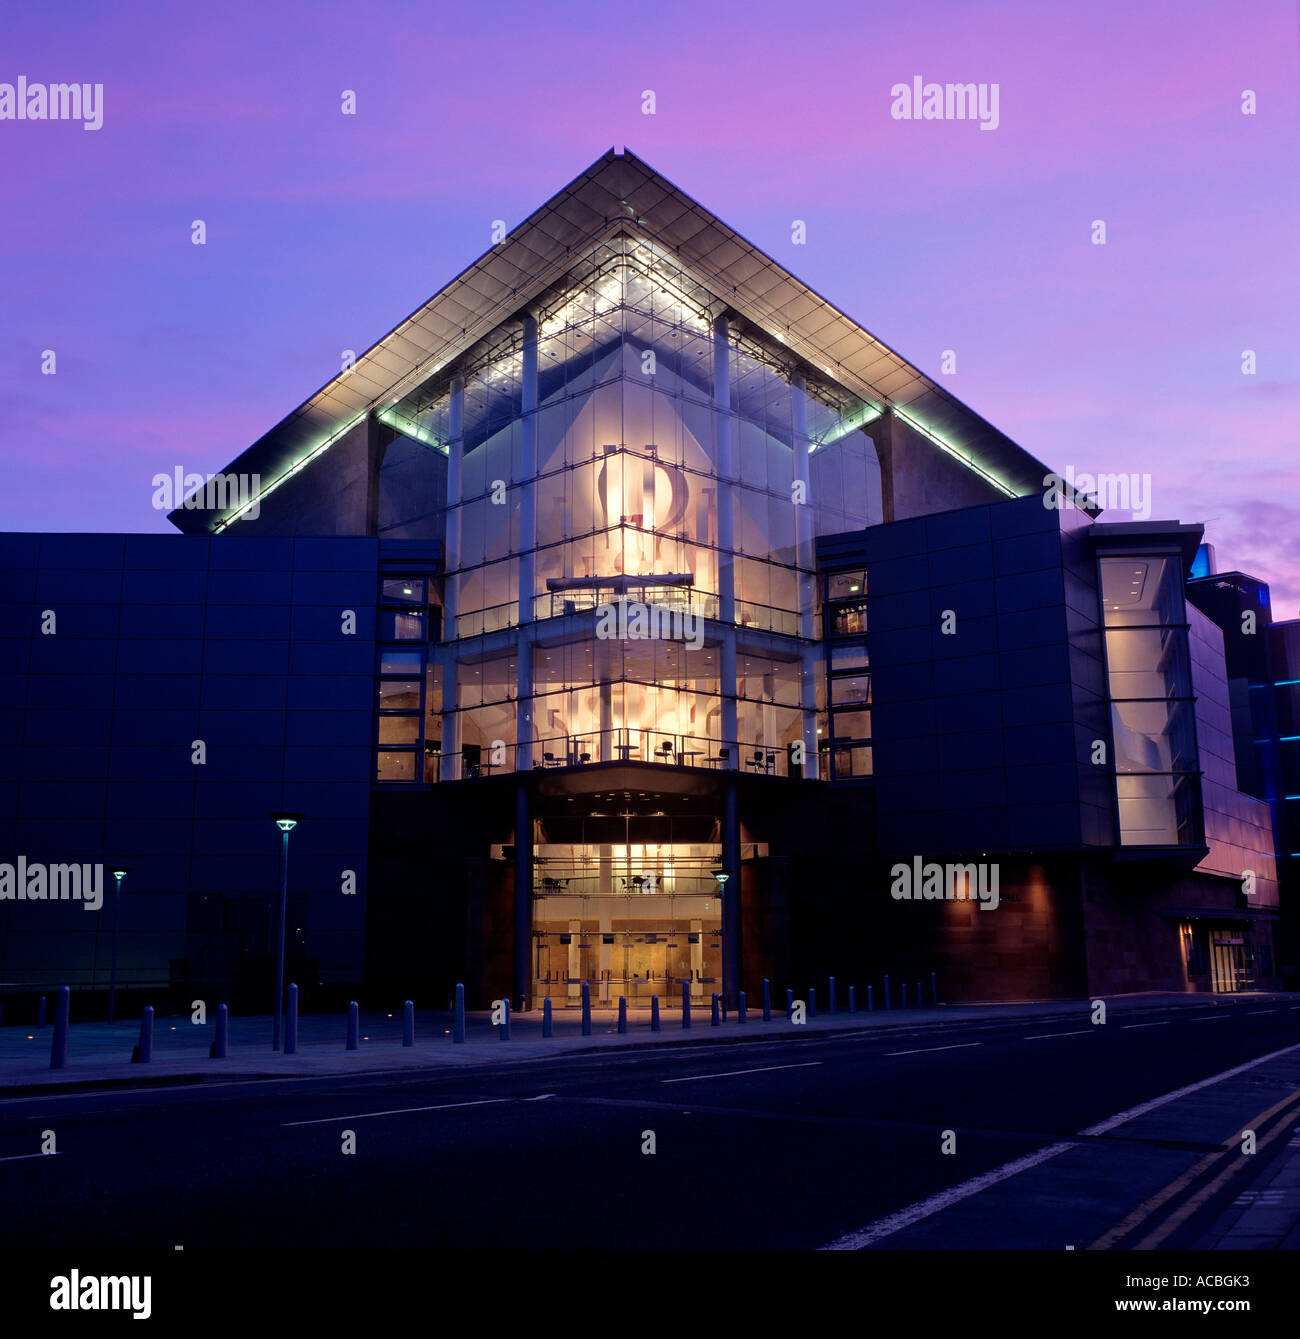 Bridgewater Konzertsaal am Abend Stadt Manchester Grafschaft Lancashire England Großbritannien redaktionellen Gebrauch Stockfoto